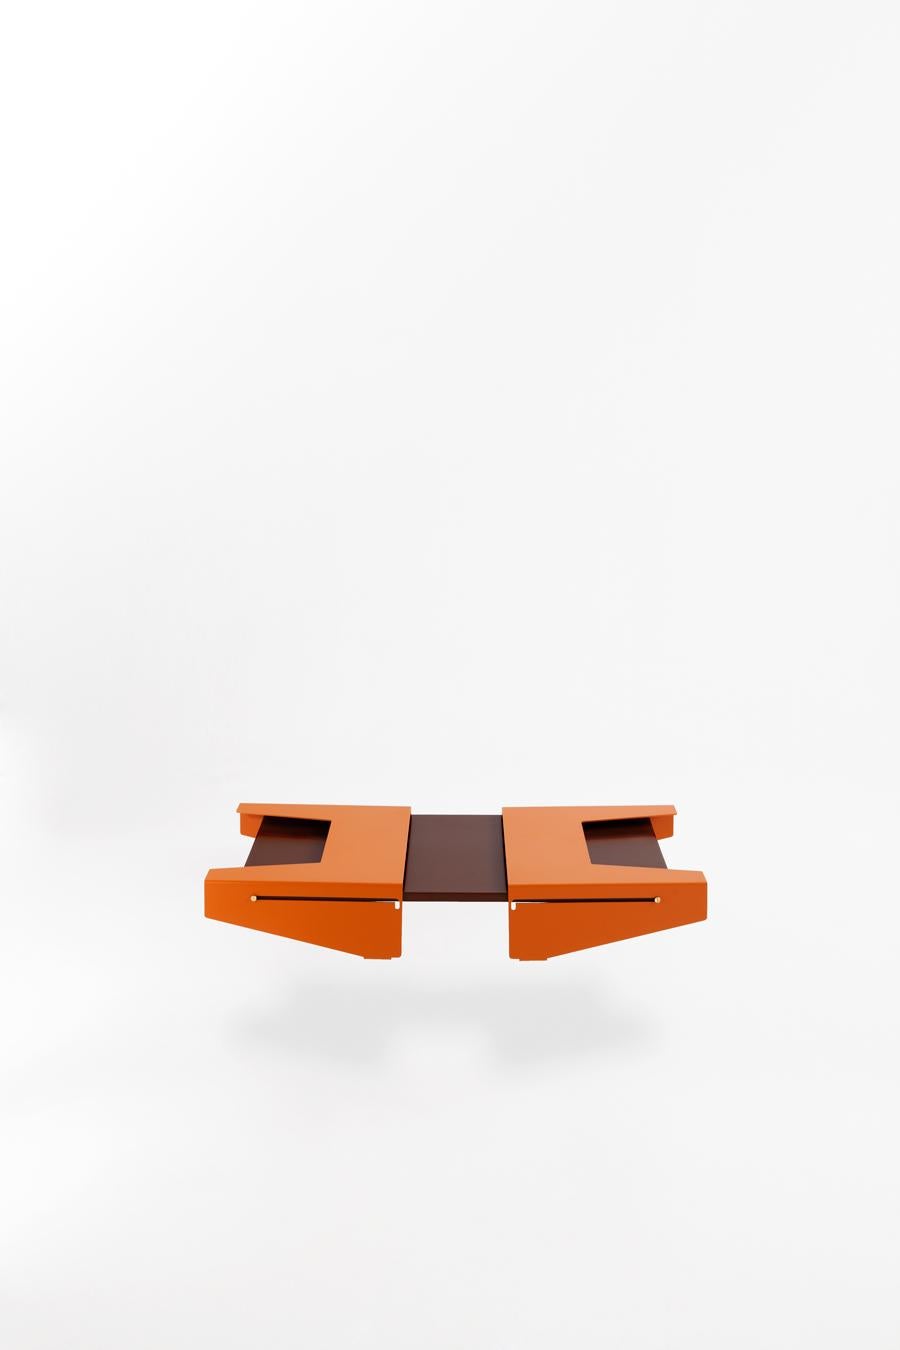 Adolfo Abejon Contemporary Design 'Falcon' Side Table In Good Condition In Barcelona, Barcelona